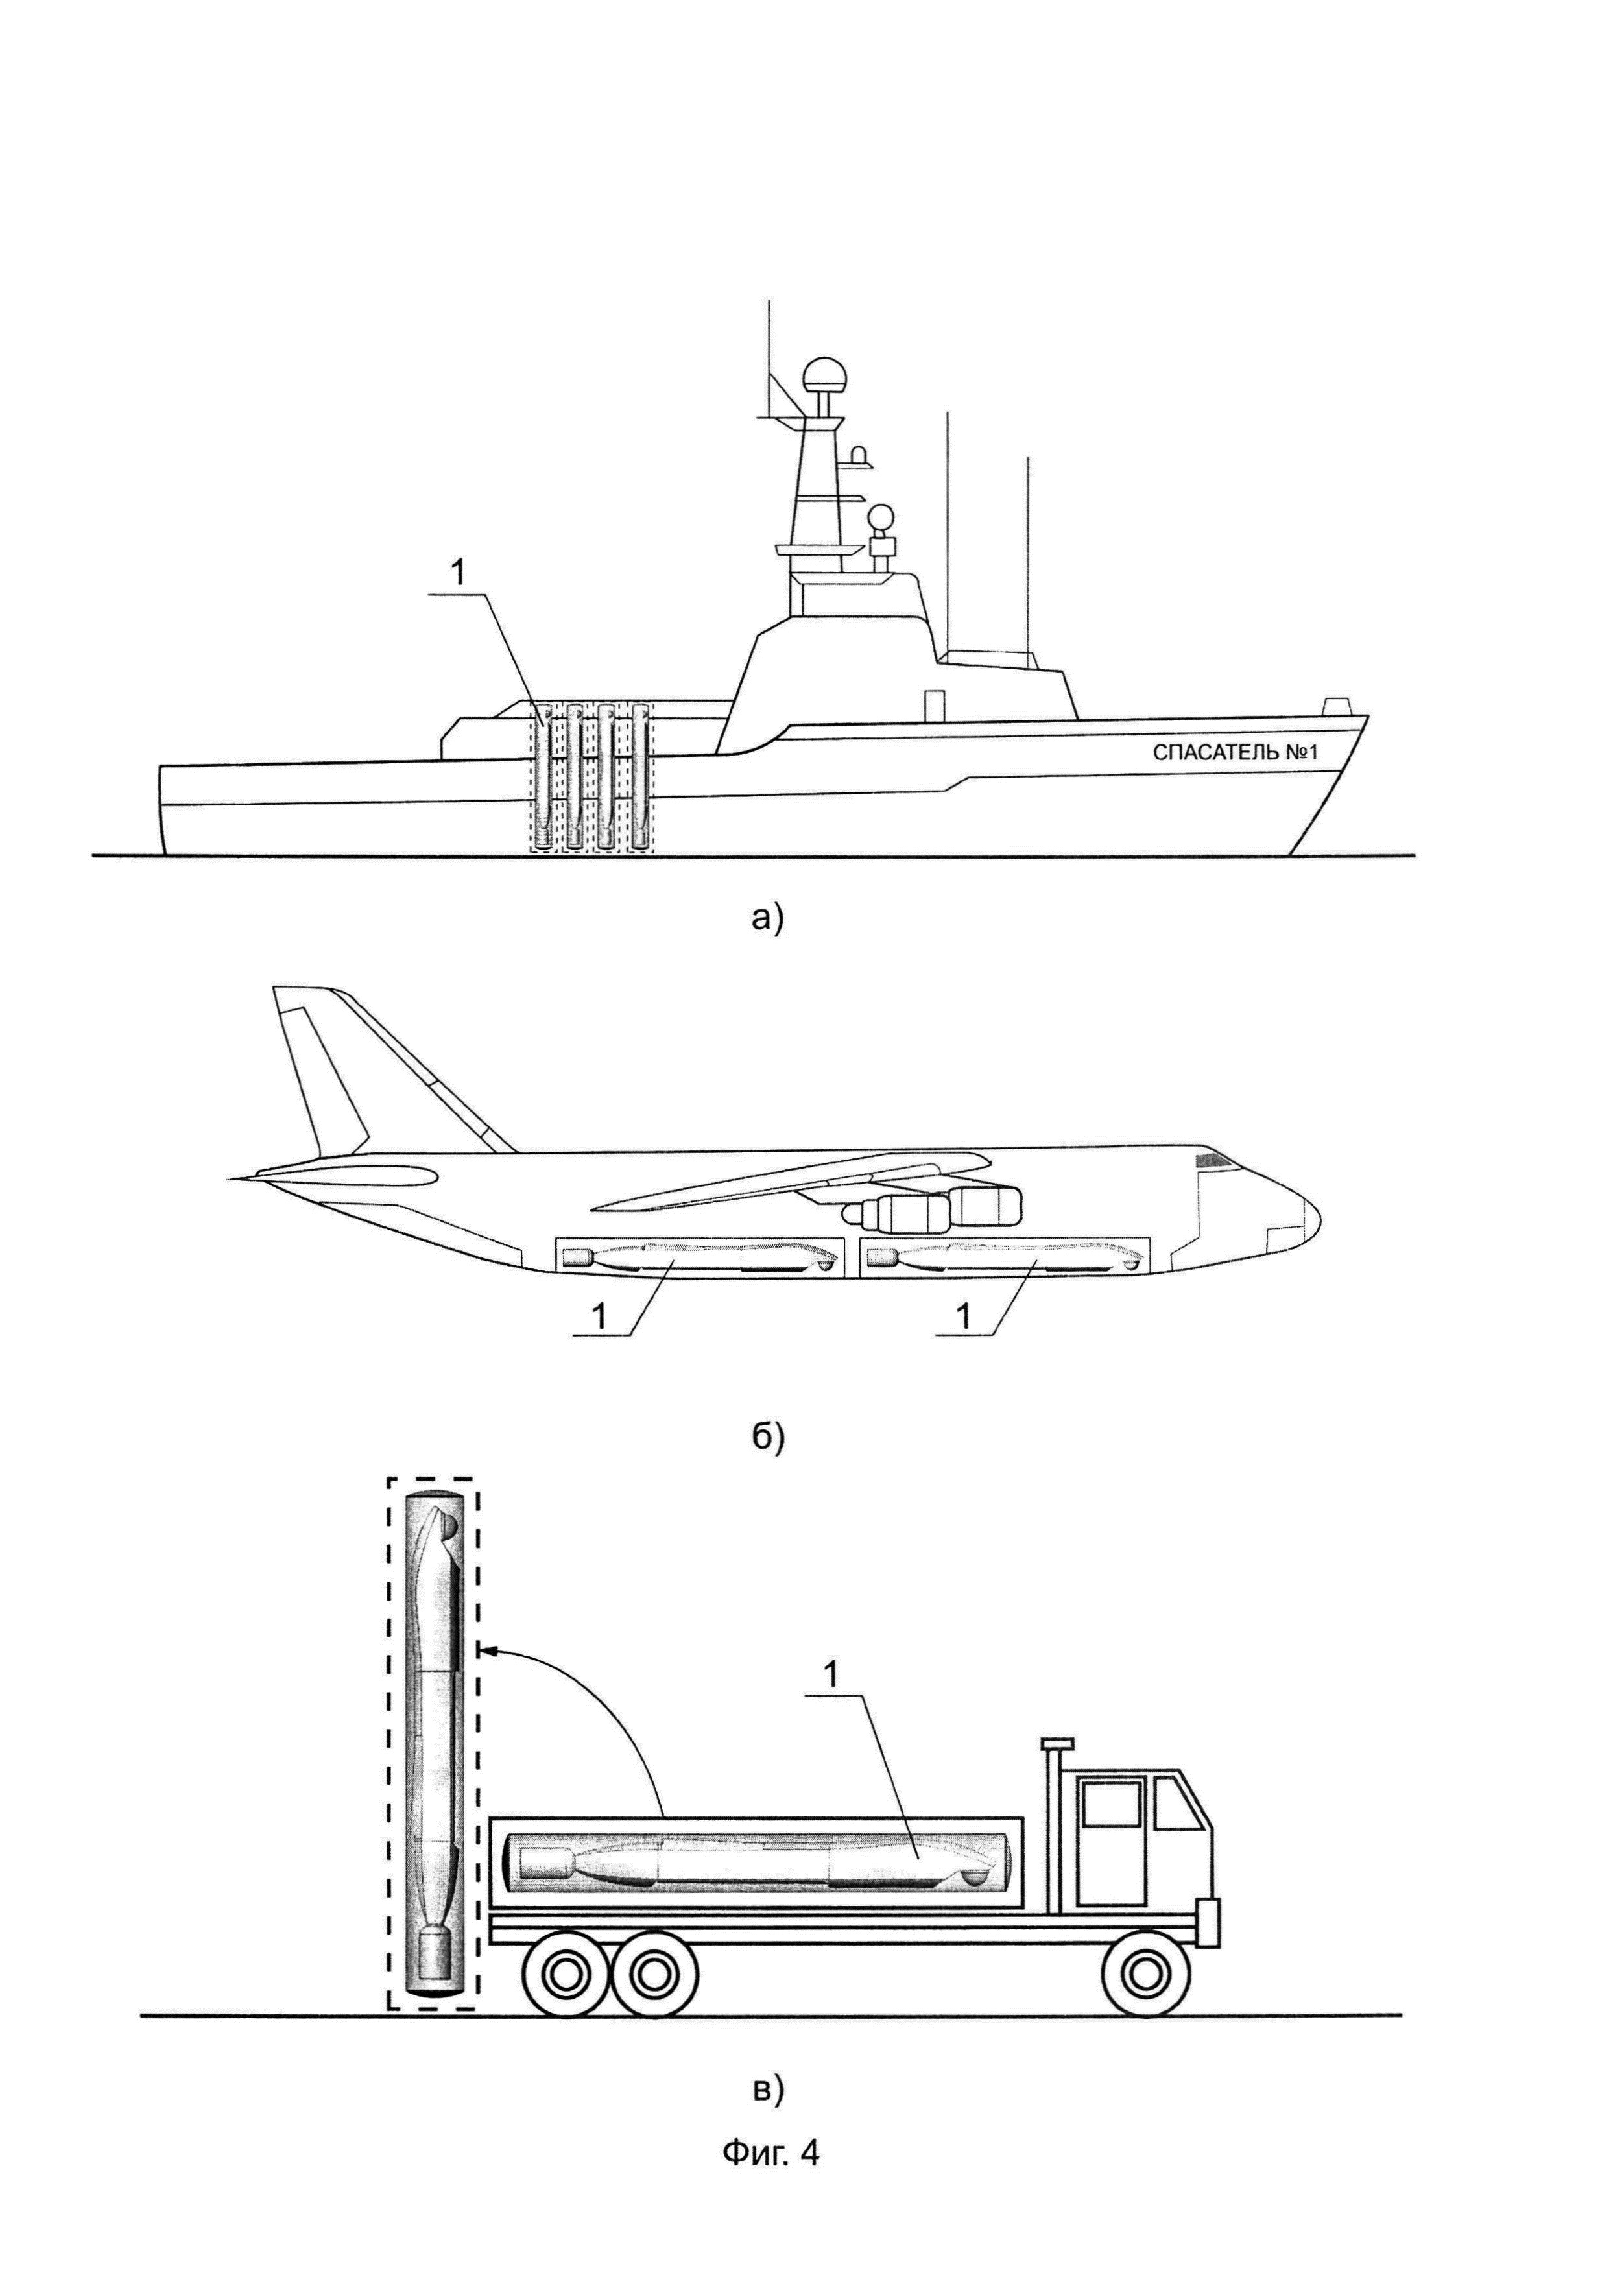 Многоразовый беспилотный летательный аппарат в транспортно-пусковом контейнере и способ старта многоразового беспилотного летательного аппарата из транспортно-пускового контейнера